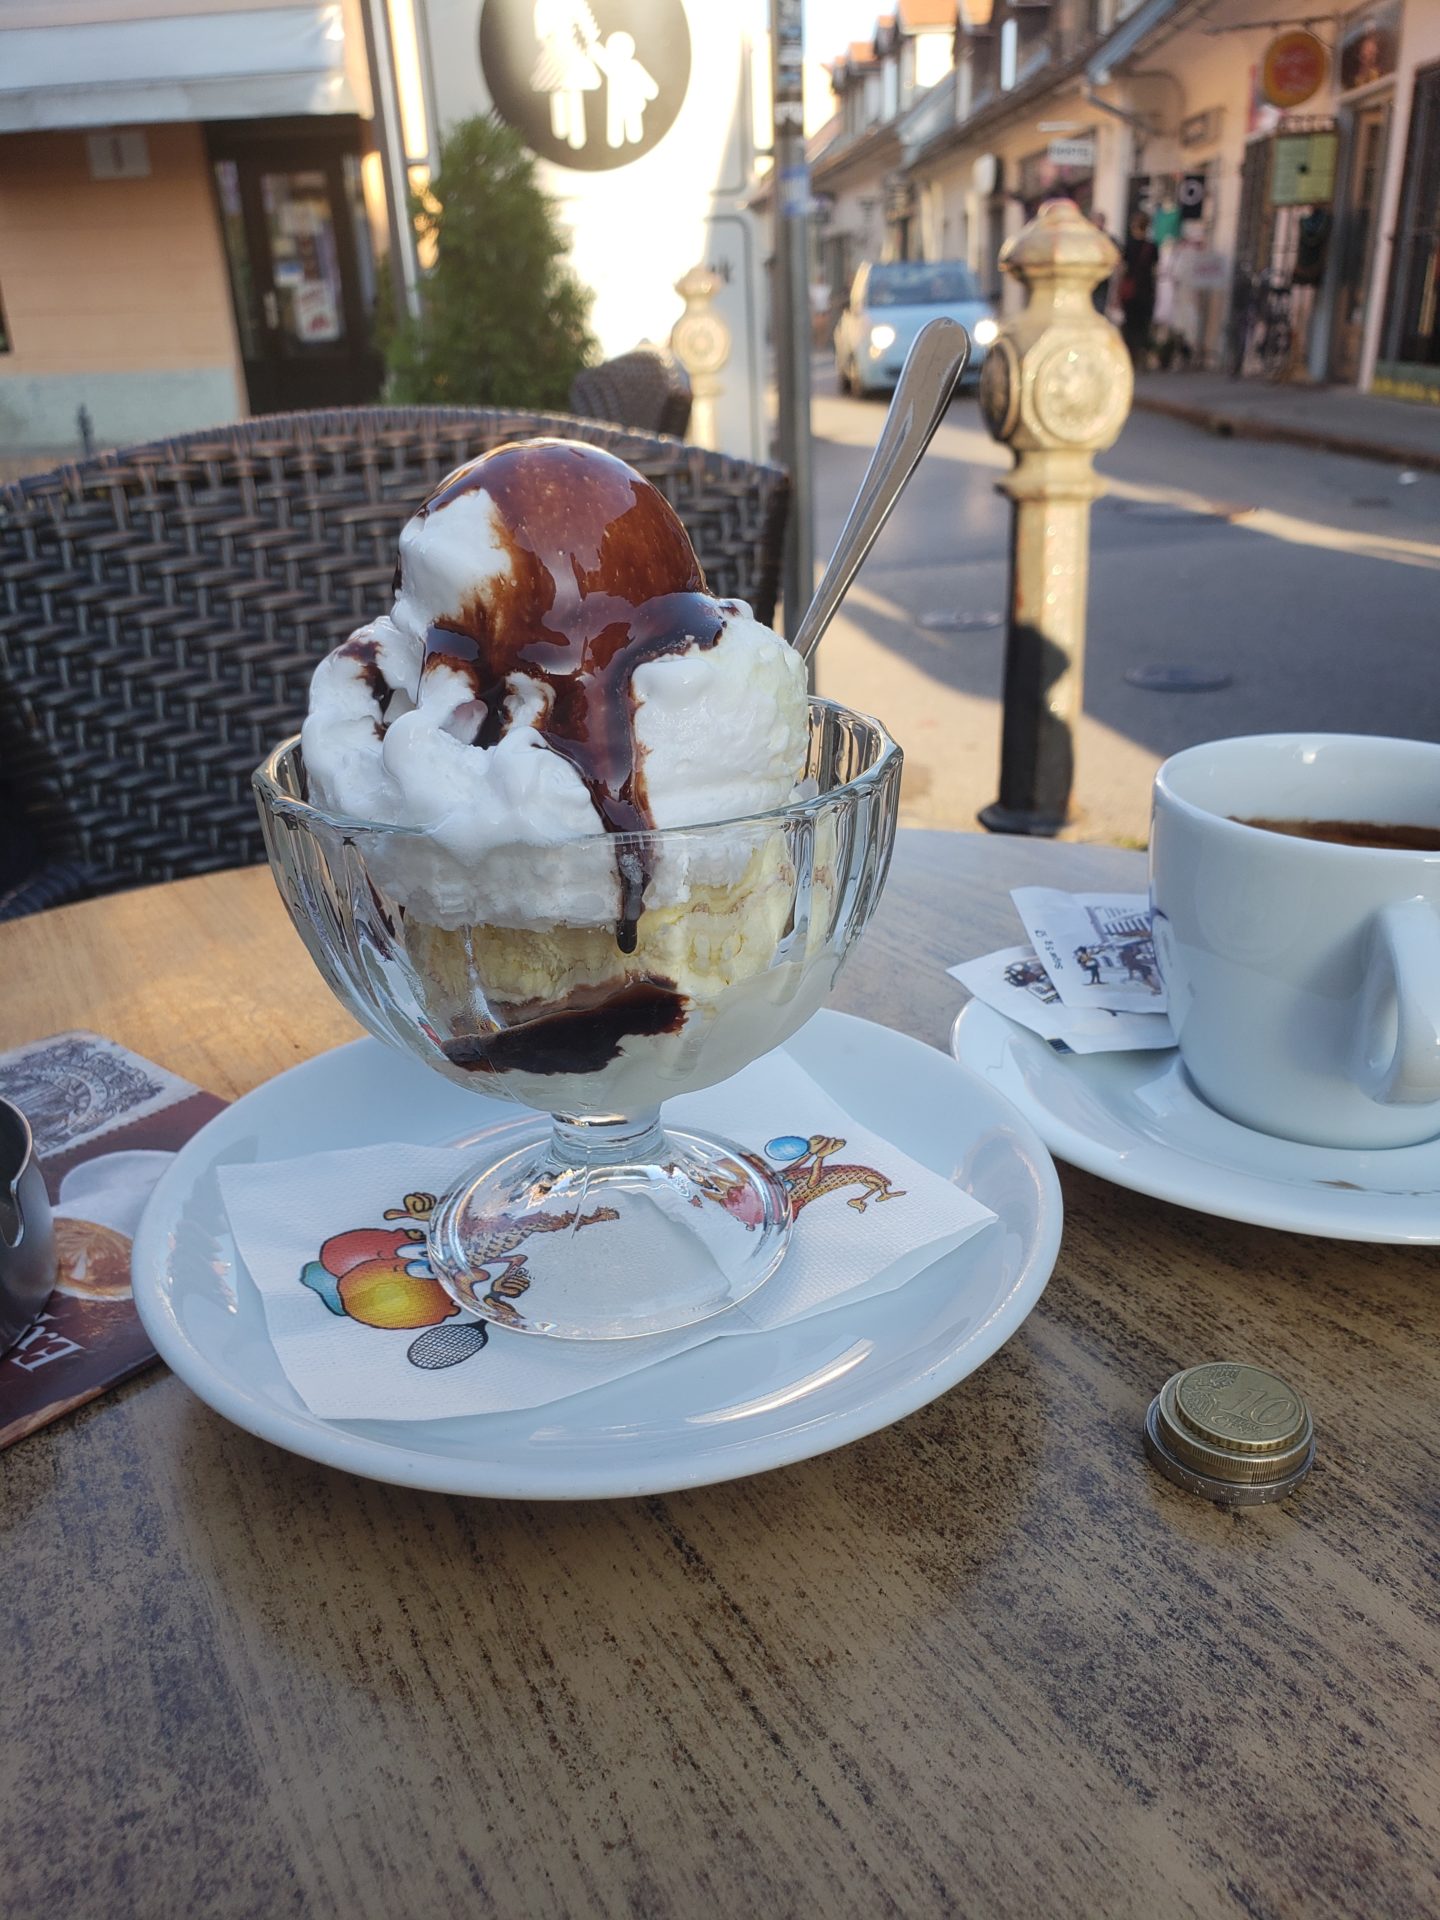 a sundae with ice cream and chocolate sauce on a table